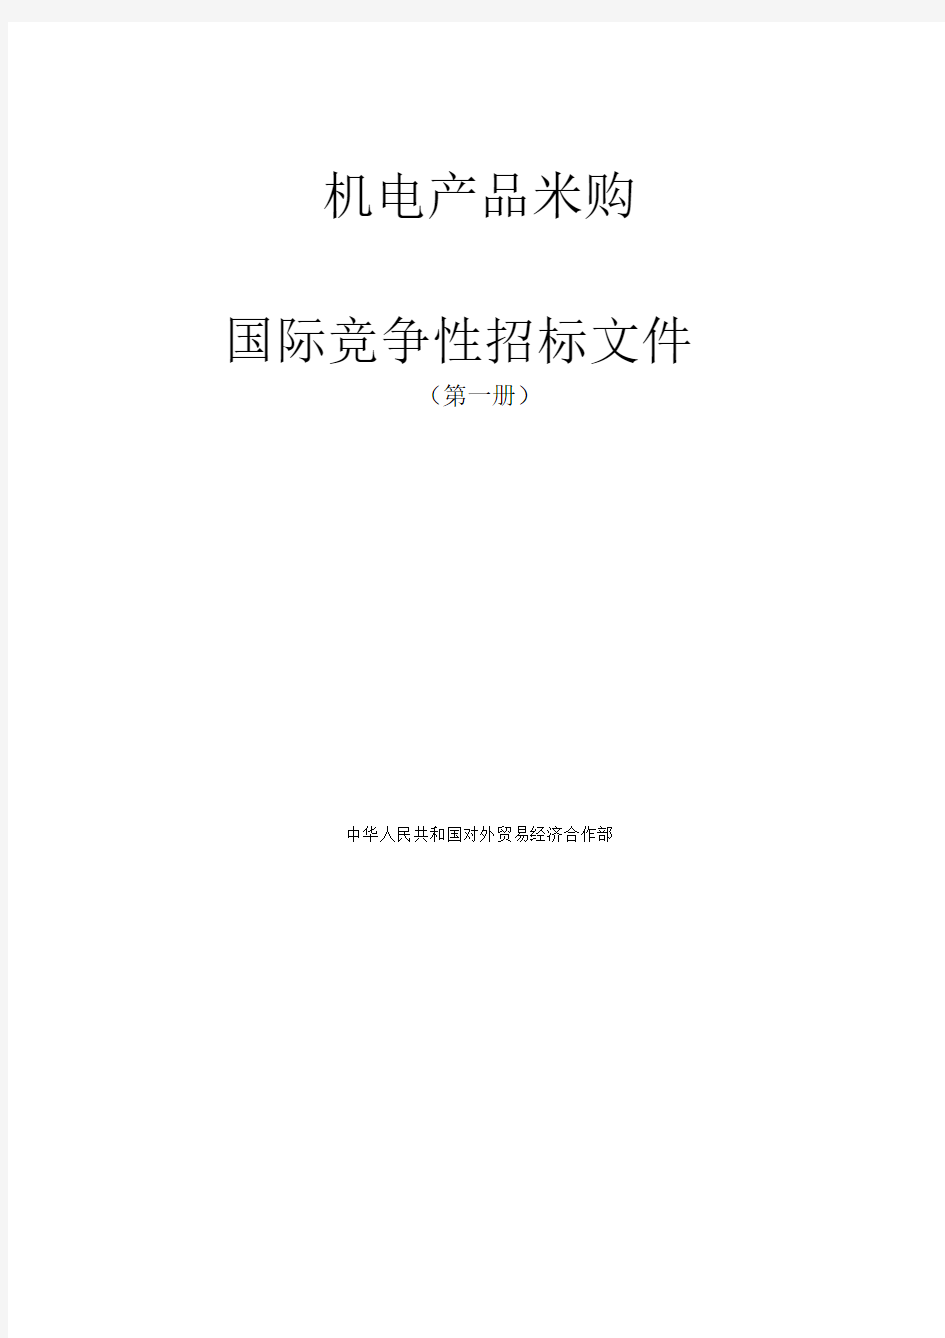 机电产品采购国际竞争性招标文件(第一册)(doc66页)